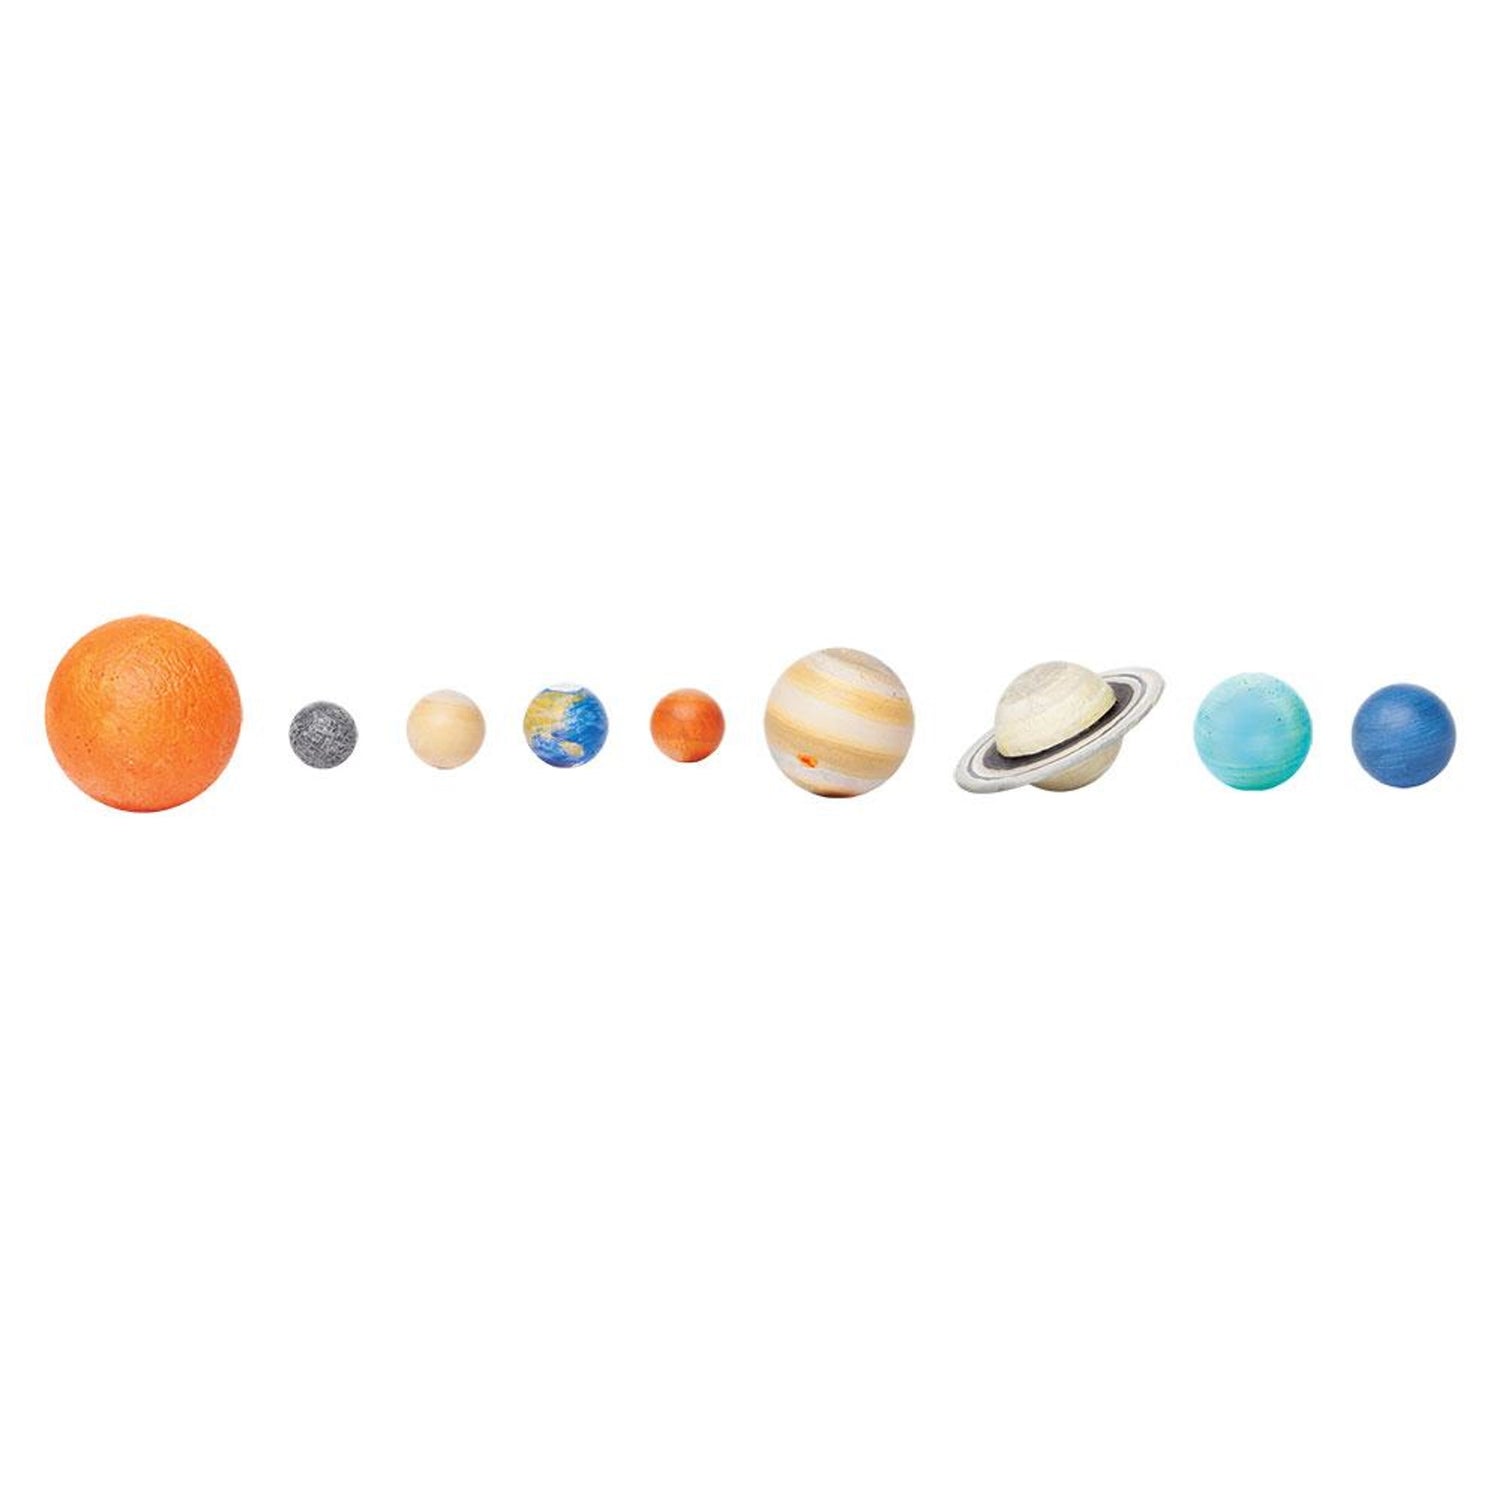 Solar System Planet Model Toy - HAPPY GUMNUT